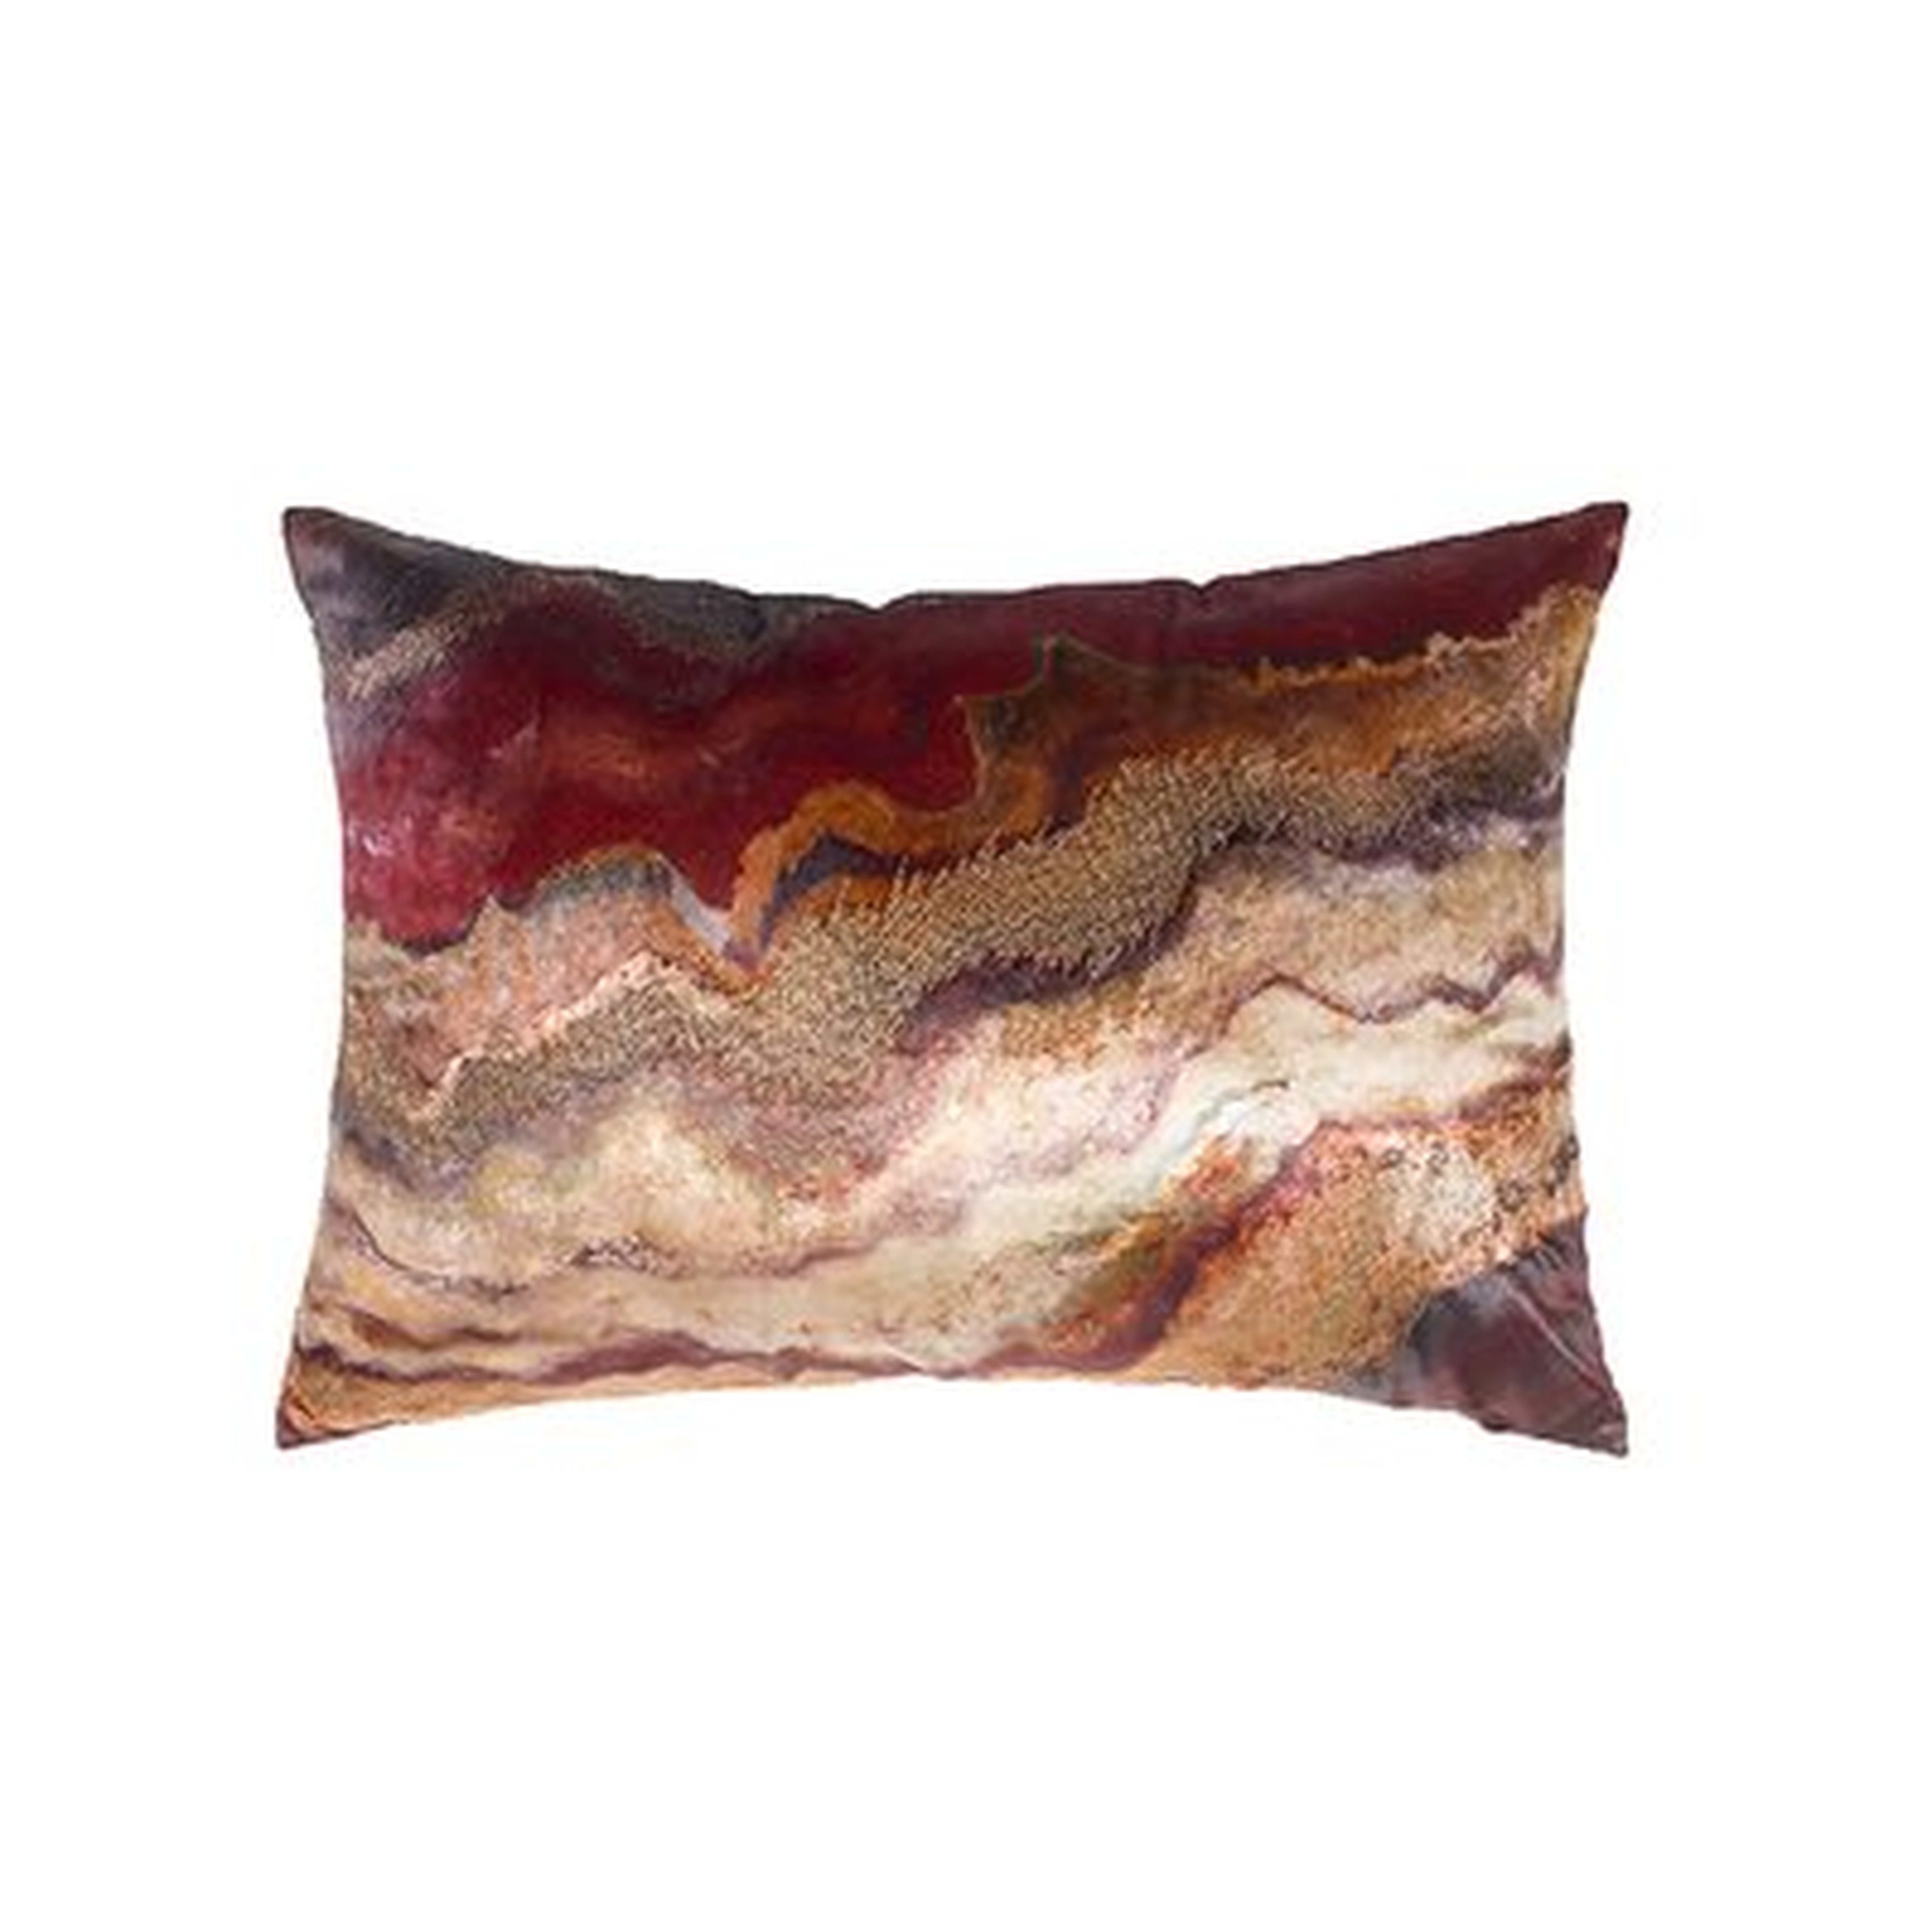 Aranga Rectangular Pillow Cover & Insert - Wayfair